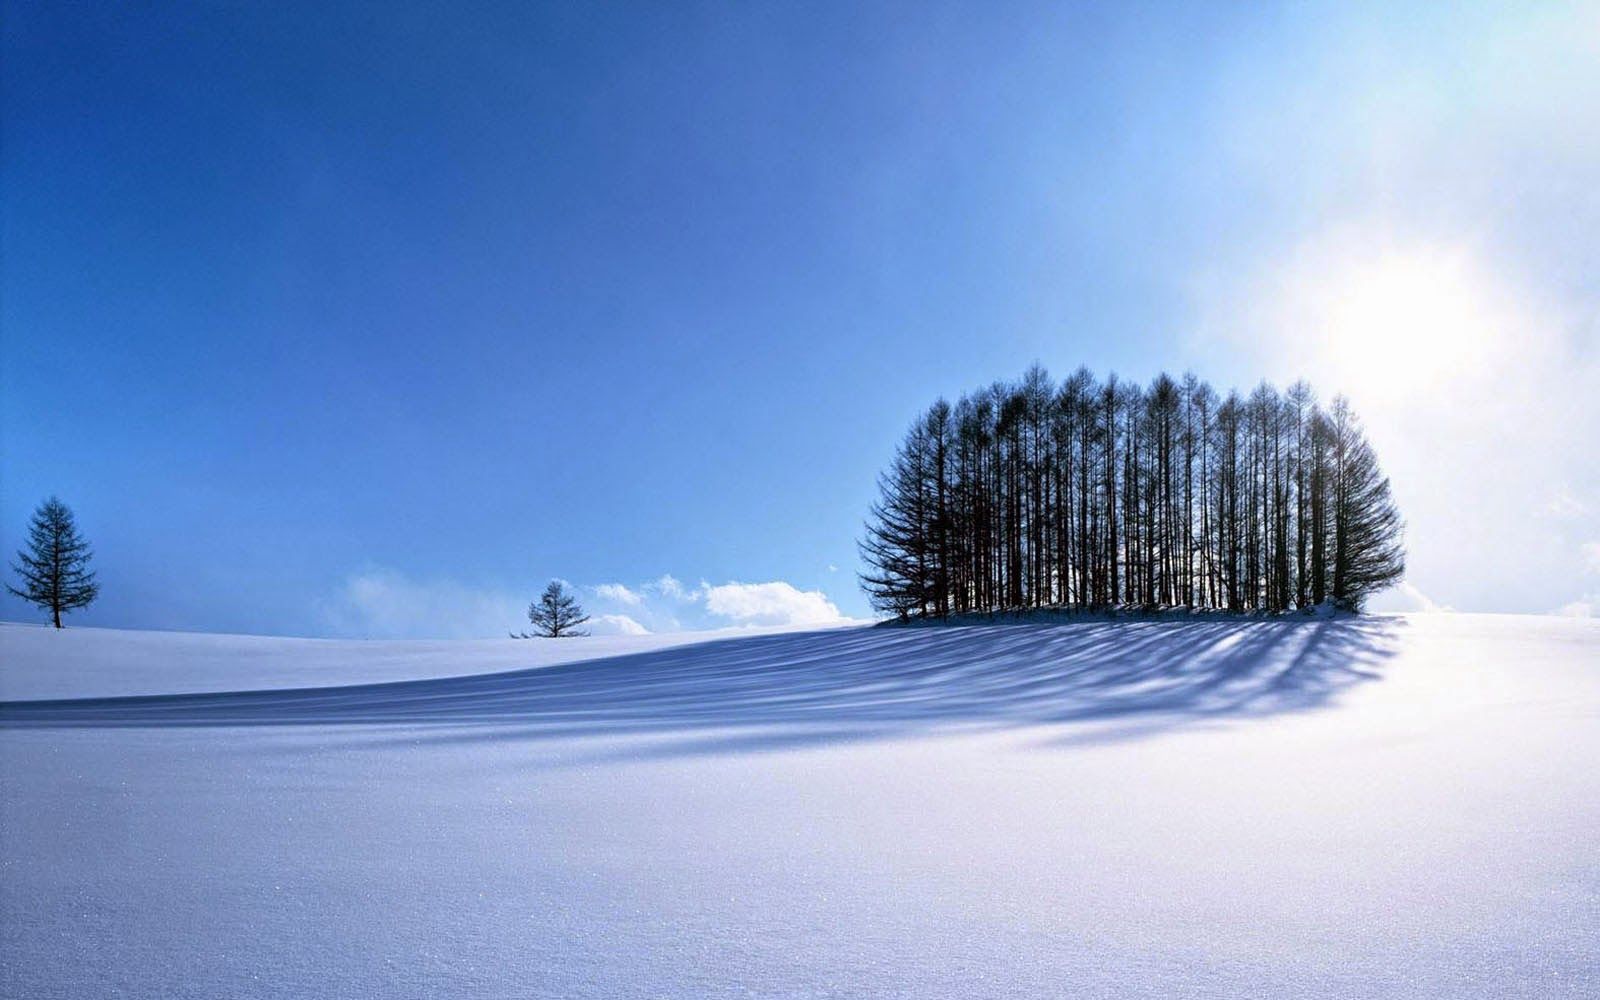 Clovisso Wallpaper Gallery: Beautiful Winter Scenery Wallpaper